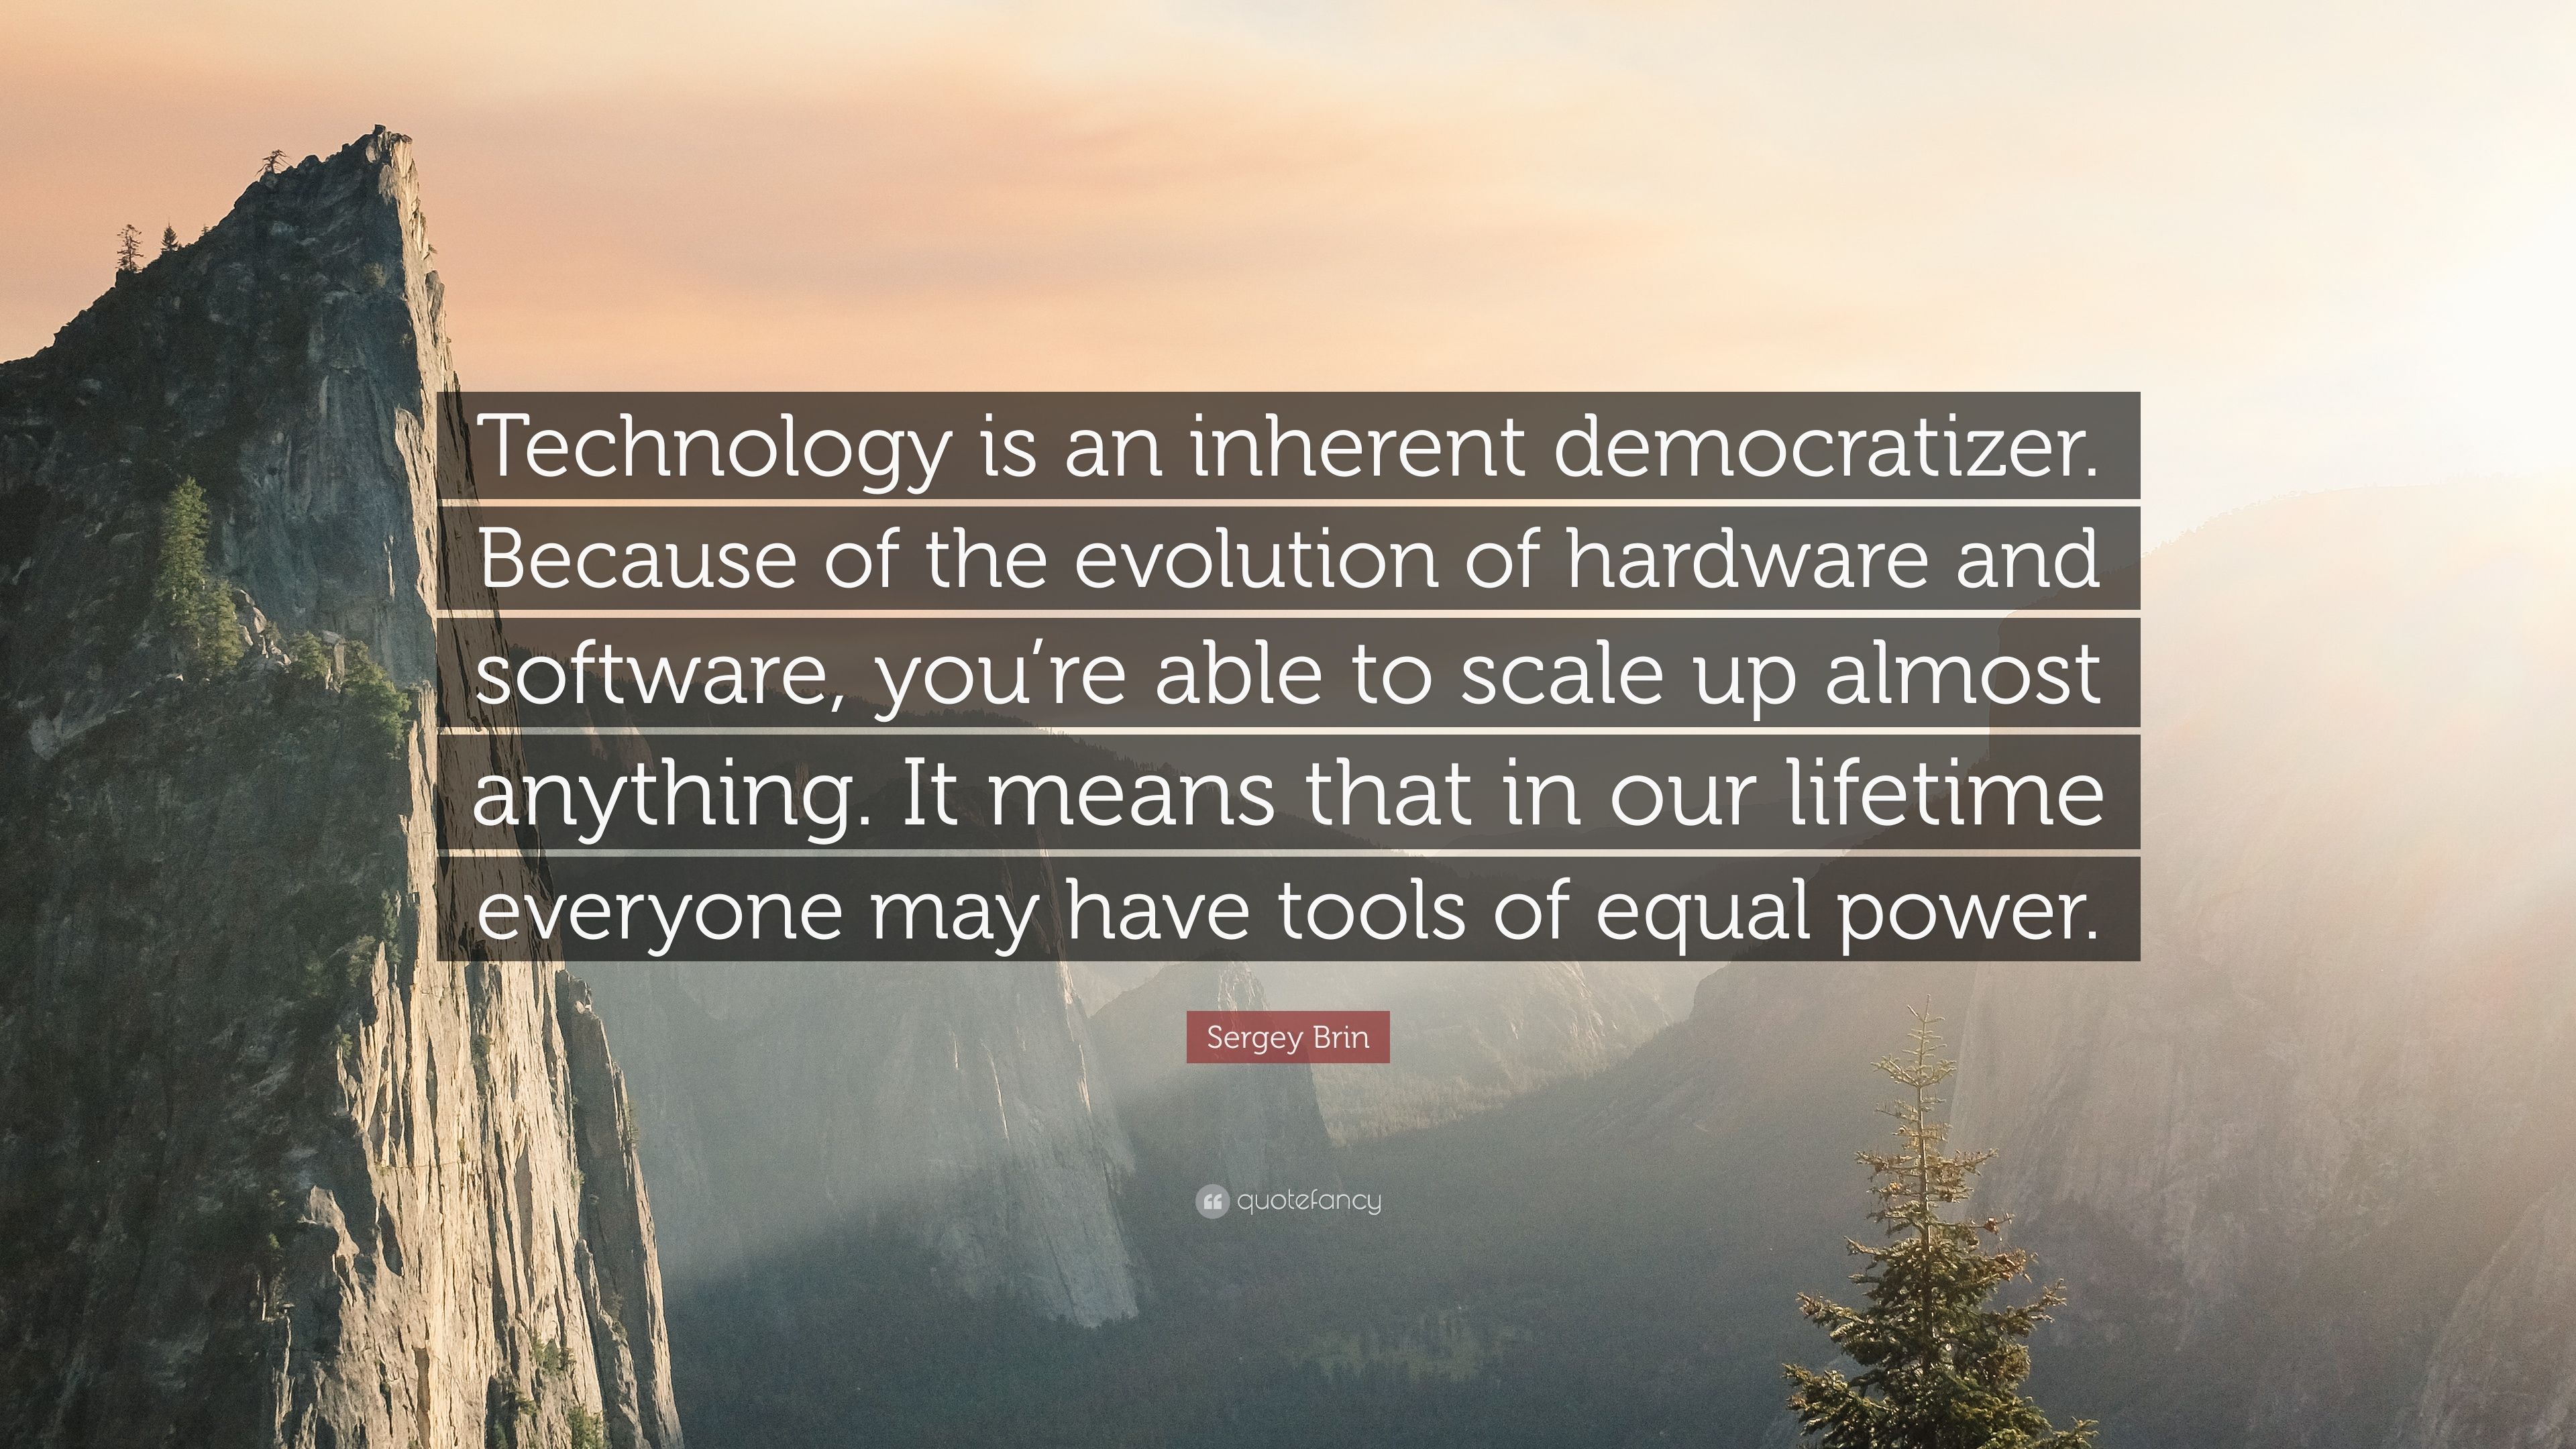 Sergey Brin Quote: “Technology is an inherent democratizer